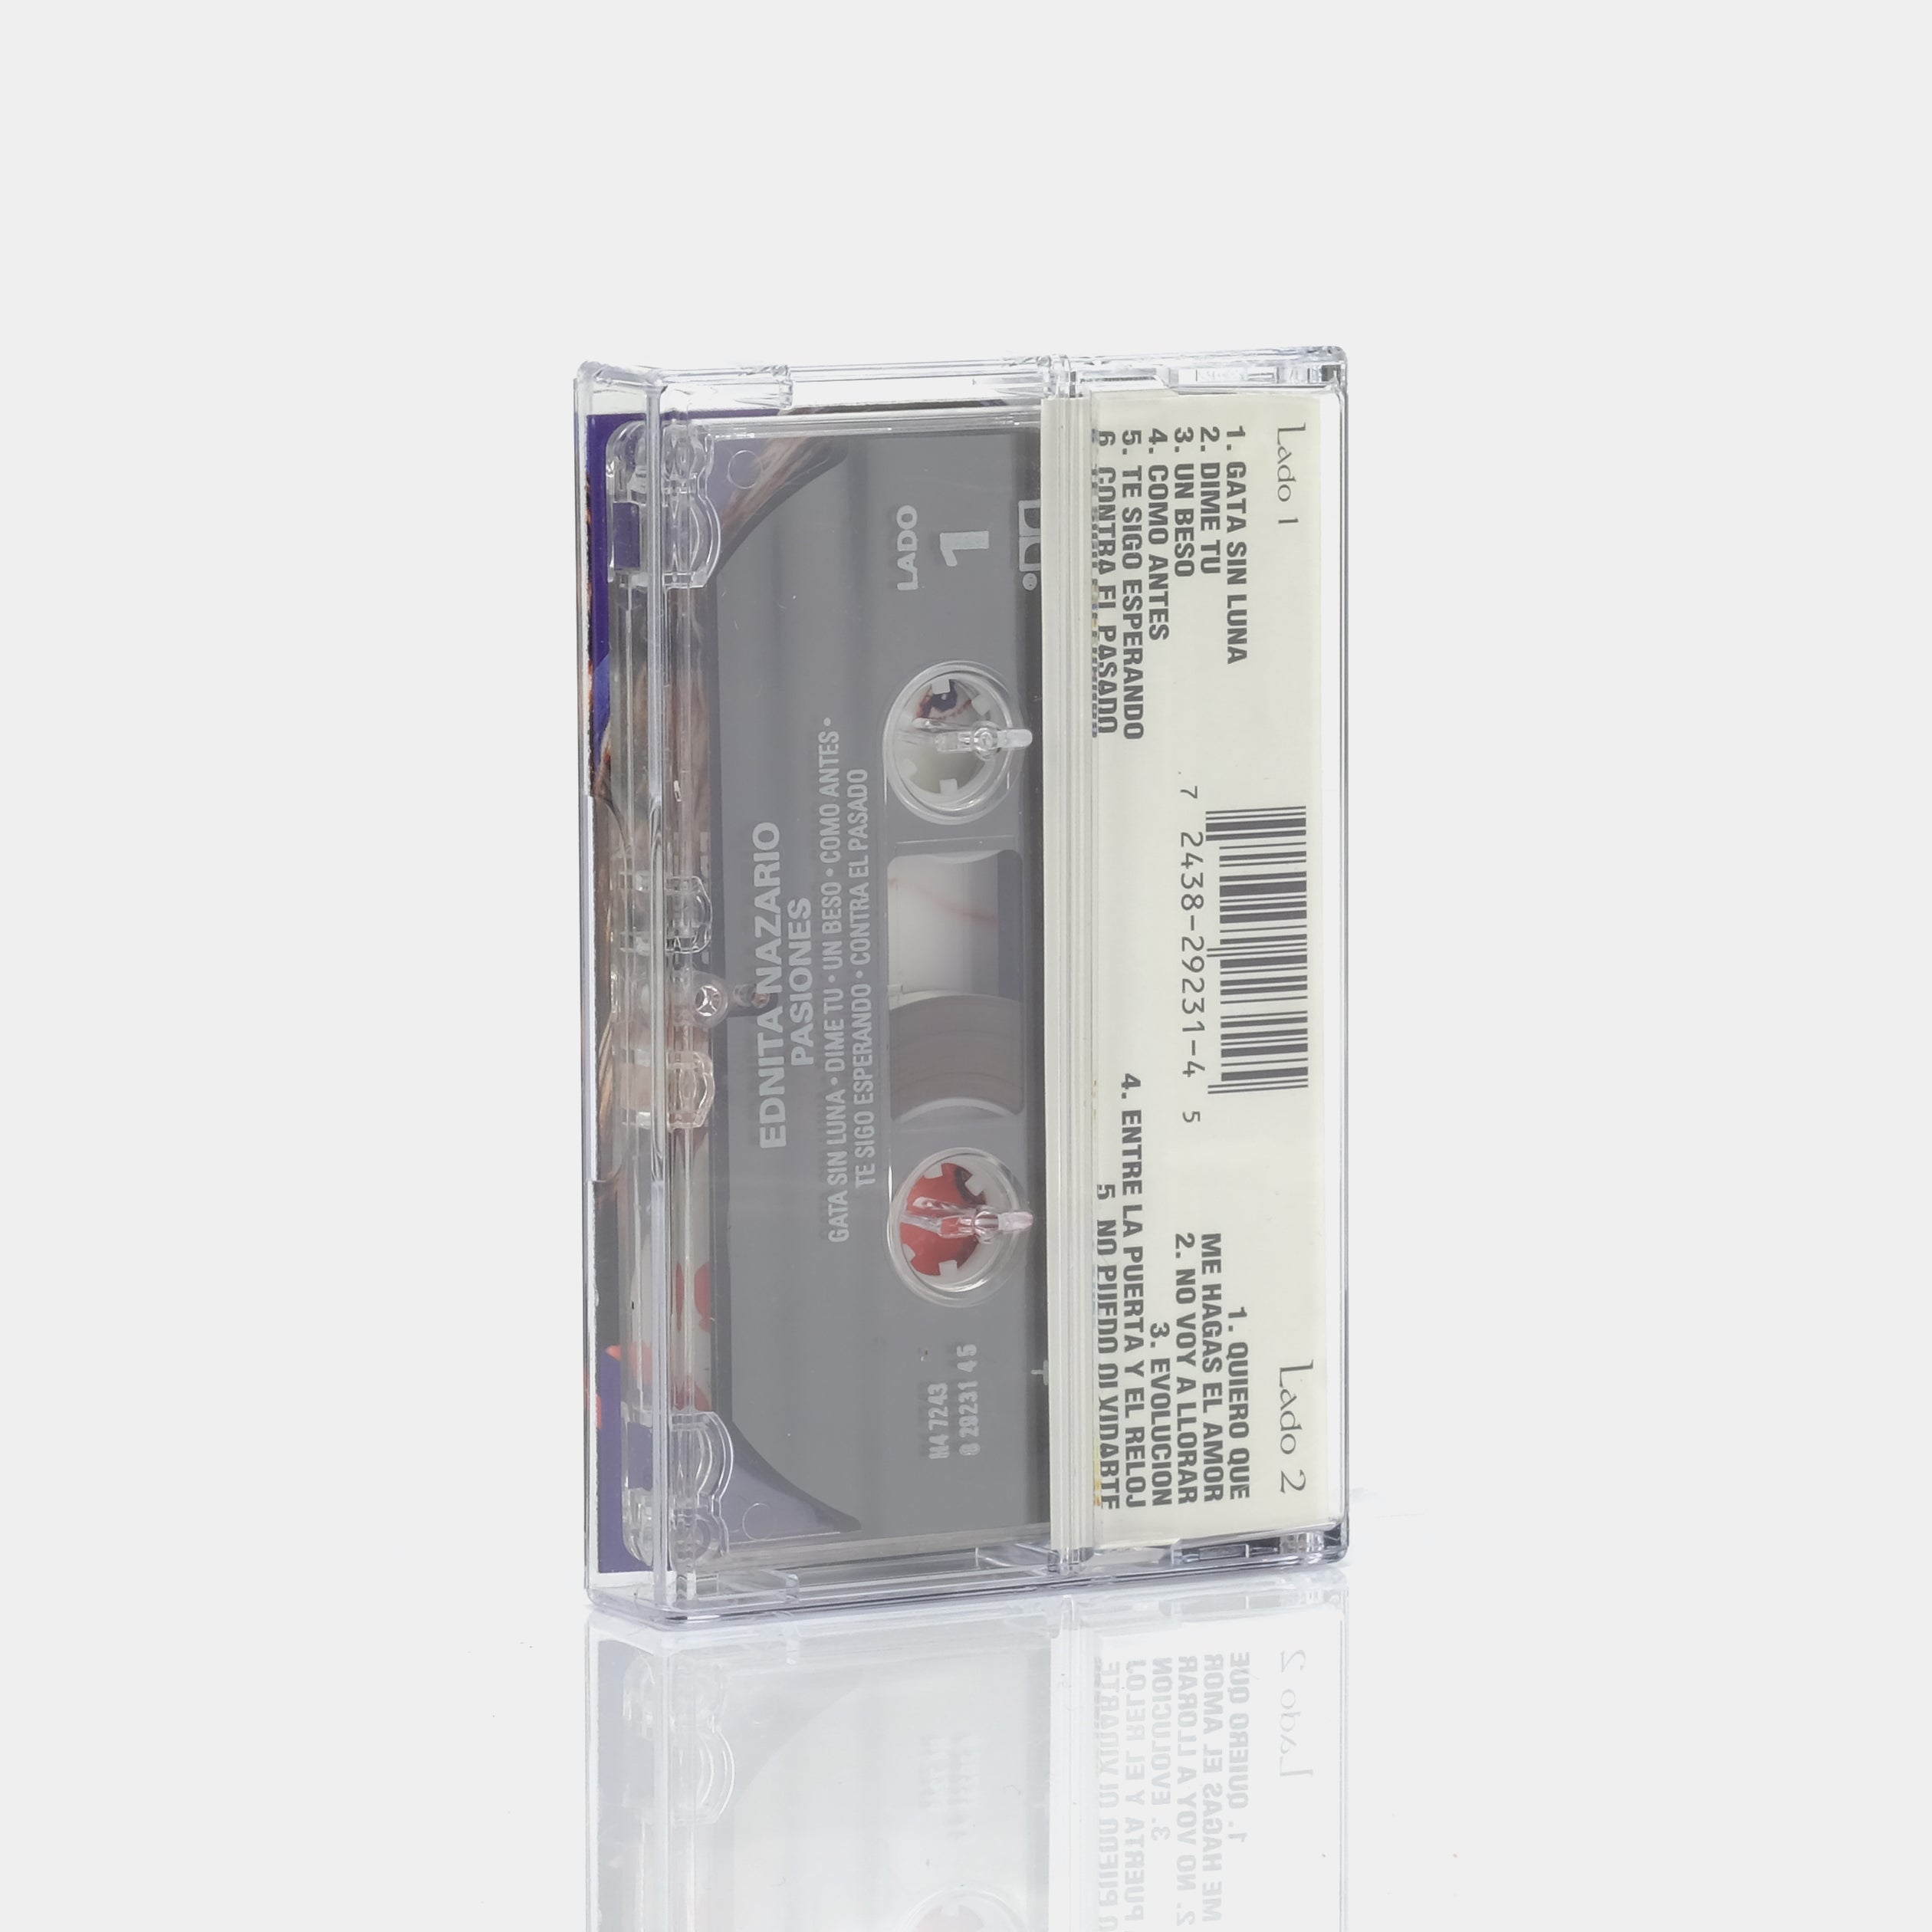 Ednita Nazario - Pasiones Cassette Tape